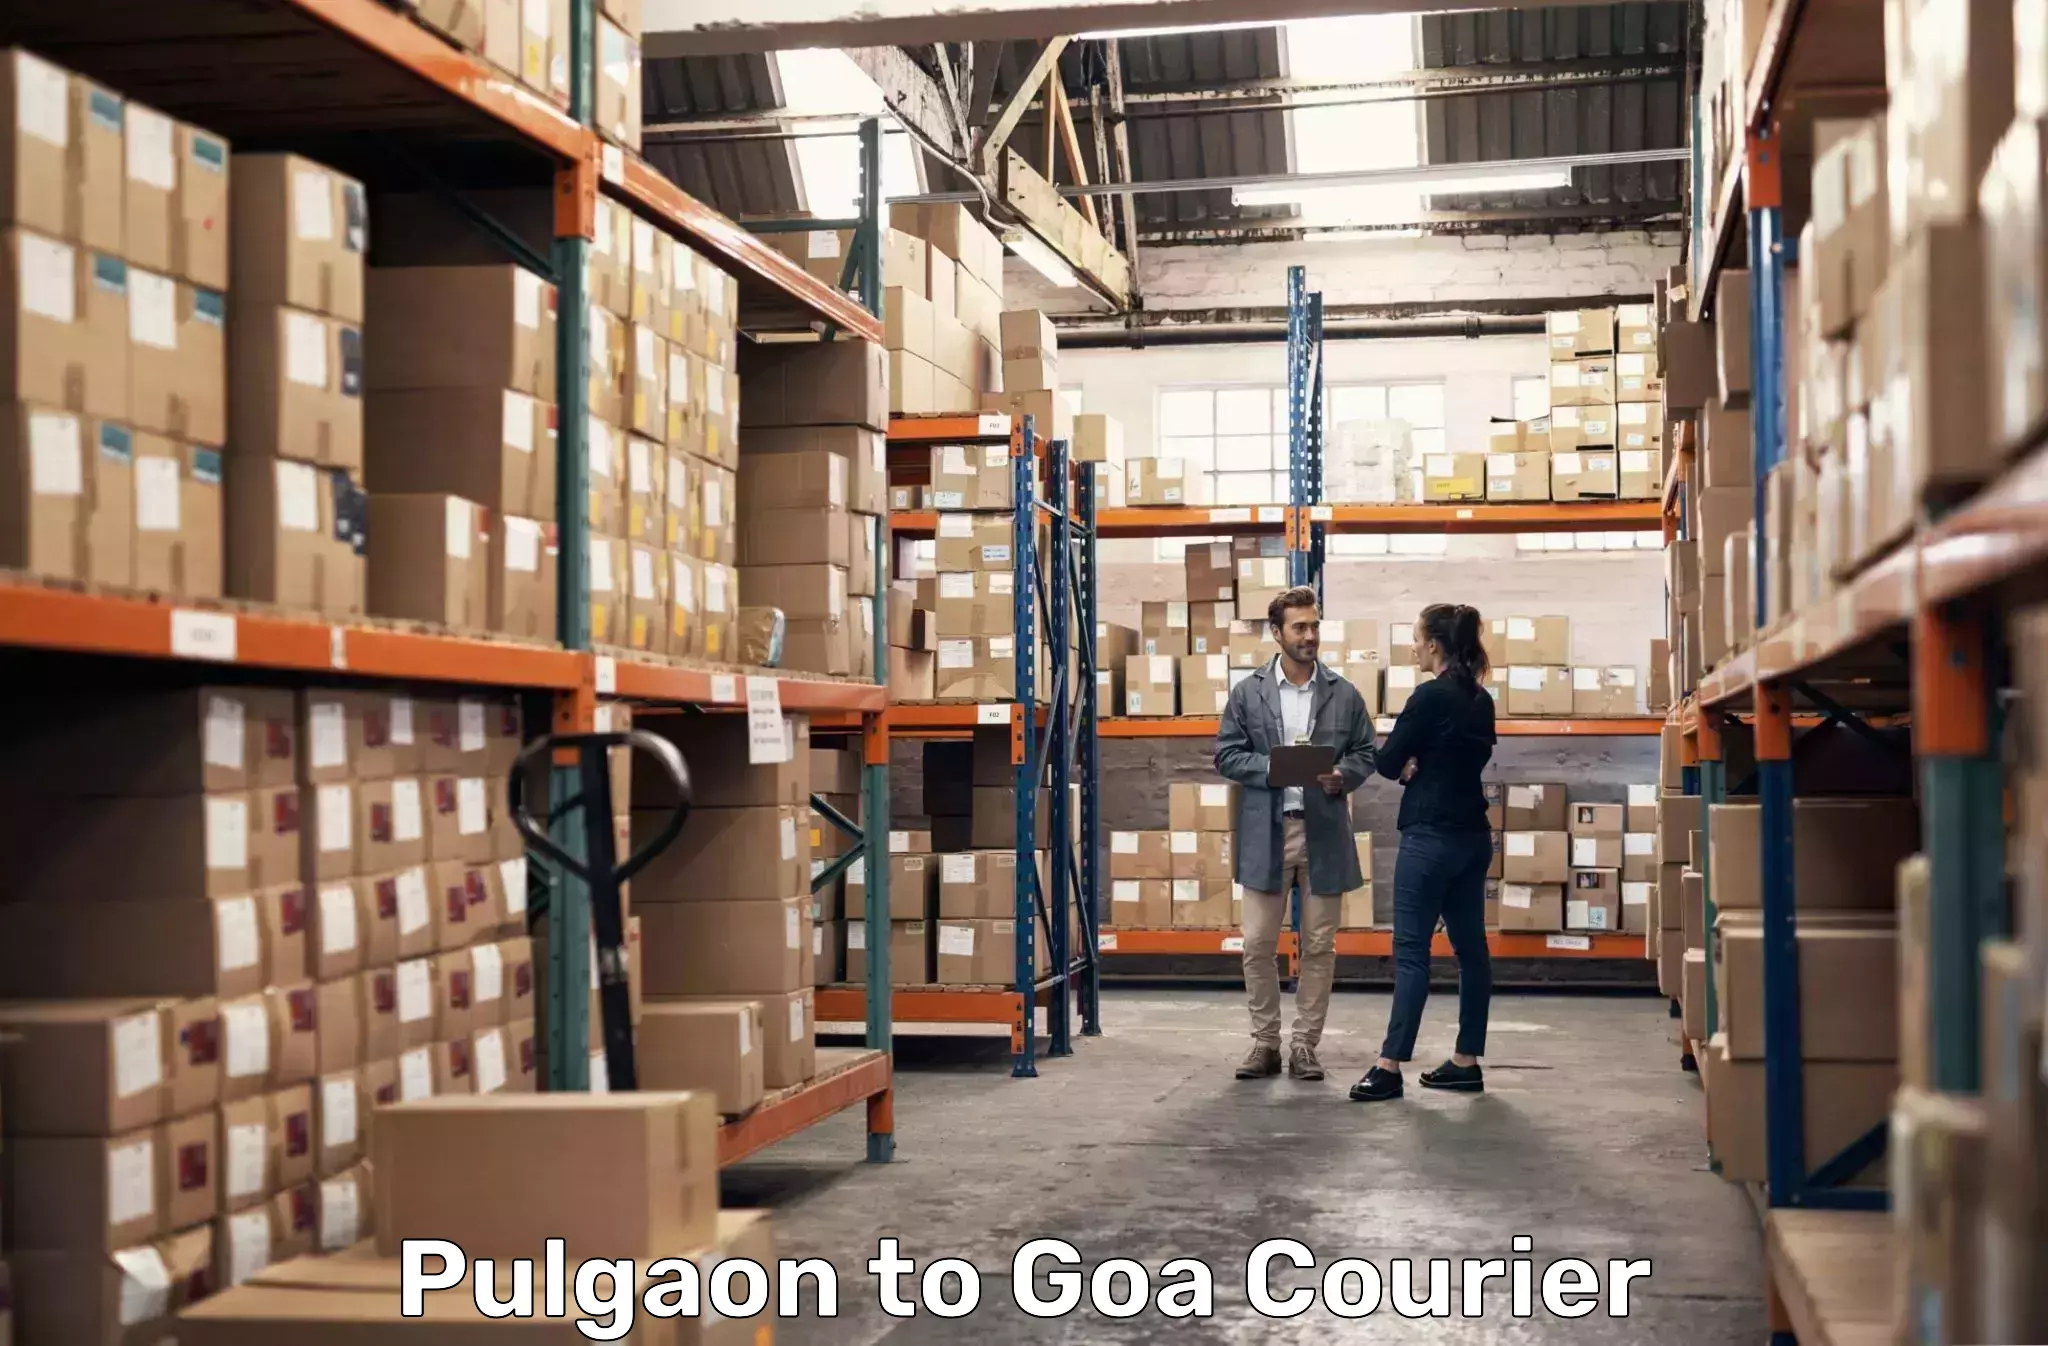 Urban courier service Pulgaon to Goa University